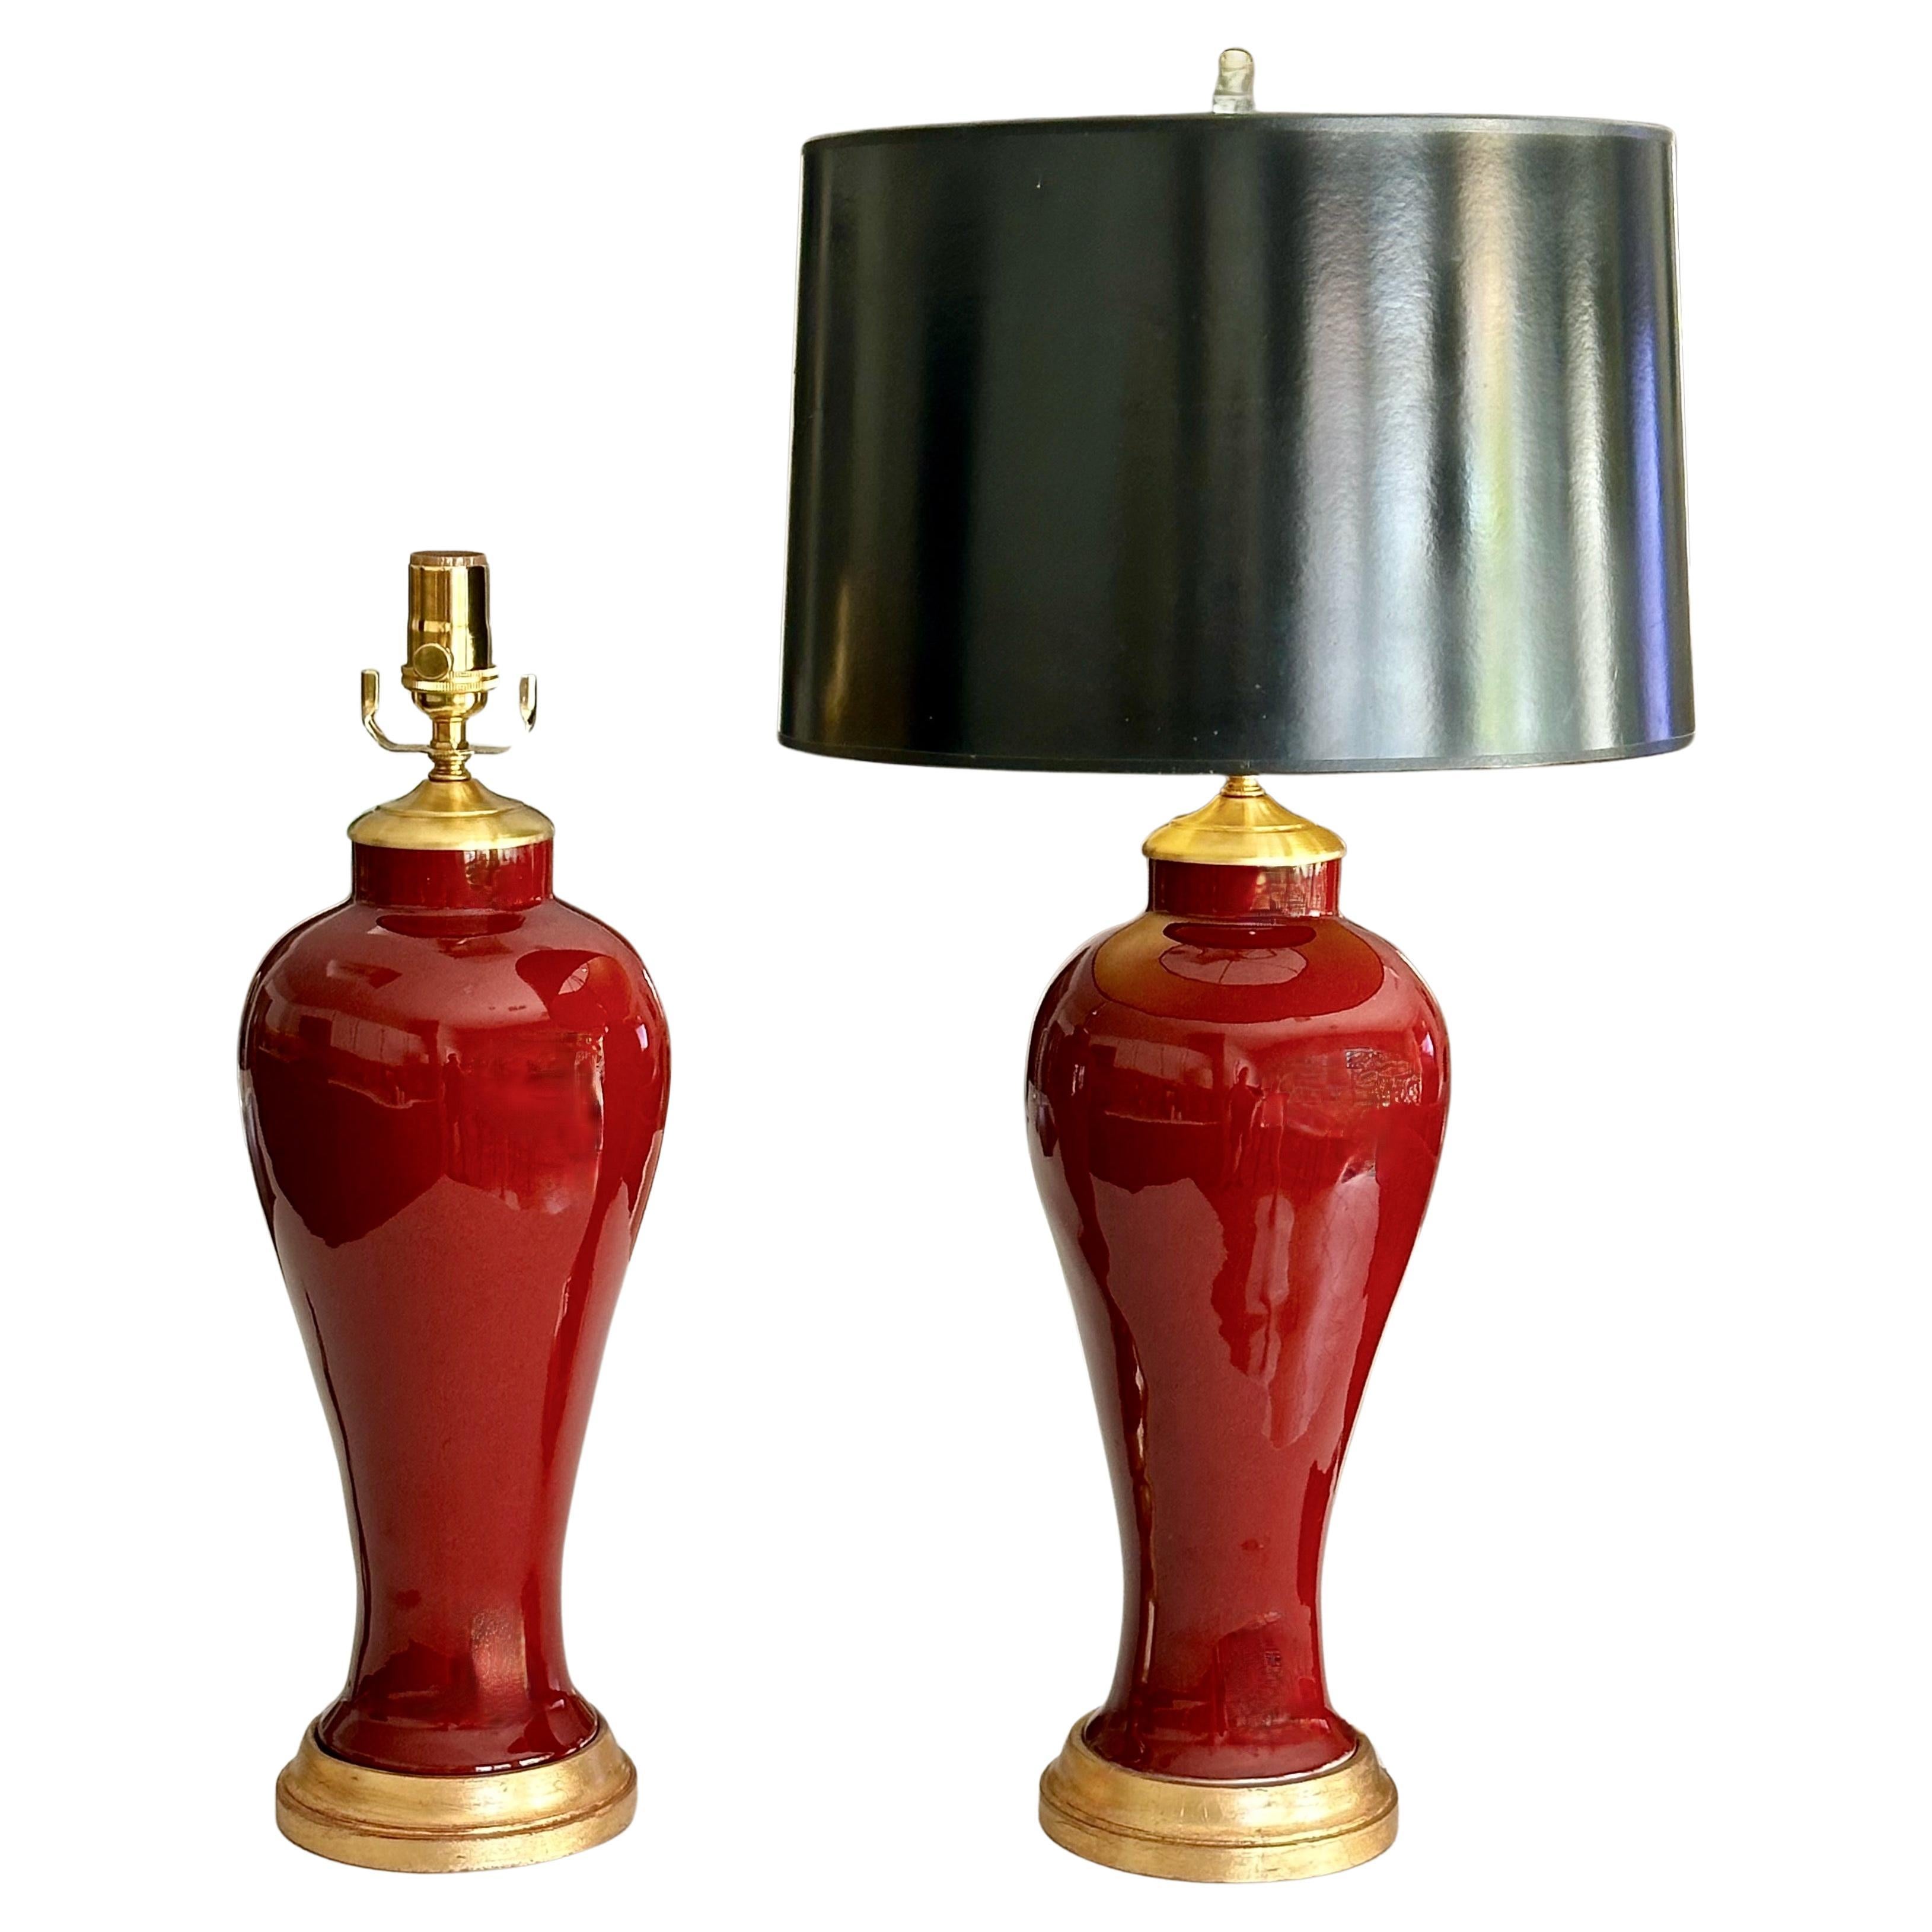 Paar chinesische Vasen aus ochsenblutfarbenem Porzellan auf vergoldeten Lampenfüßen aus Holz. Ergänzt mit Messingbeschlägen. Neu verkabelt mit neuen 3-fach Steckdosen und braunen Corden. Gesamthöhe oberhalb des Sockels 20,5